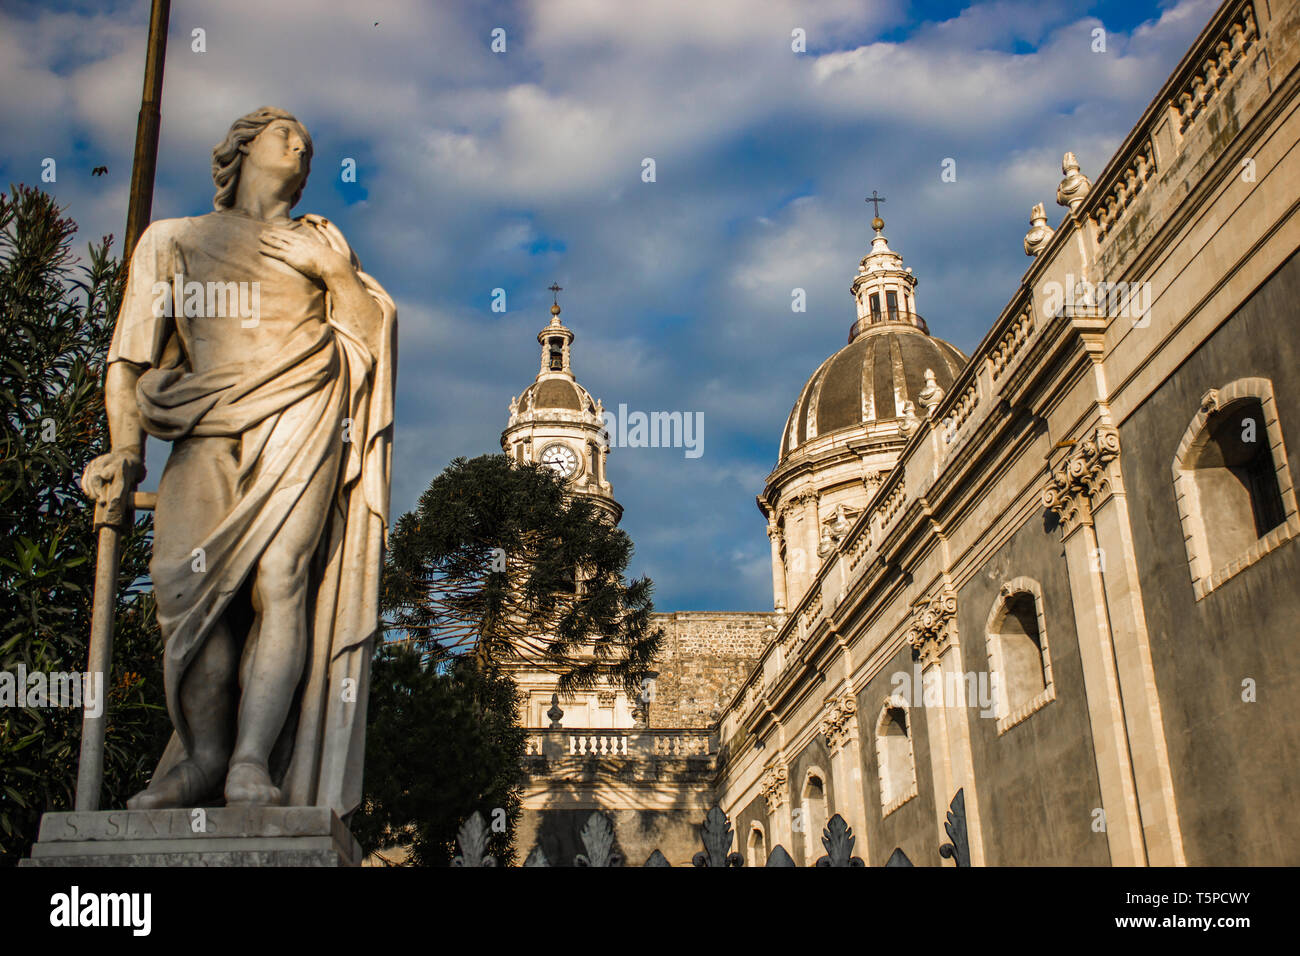 Die Kathedrale von Catania detail, barocke Architektur von der Seite der Kirche mit Statue und Kuppel Stockfoto